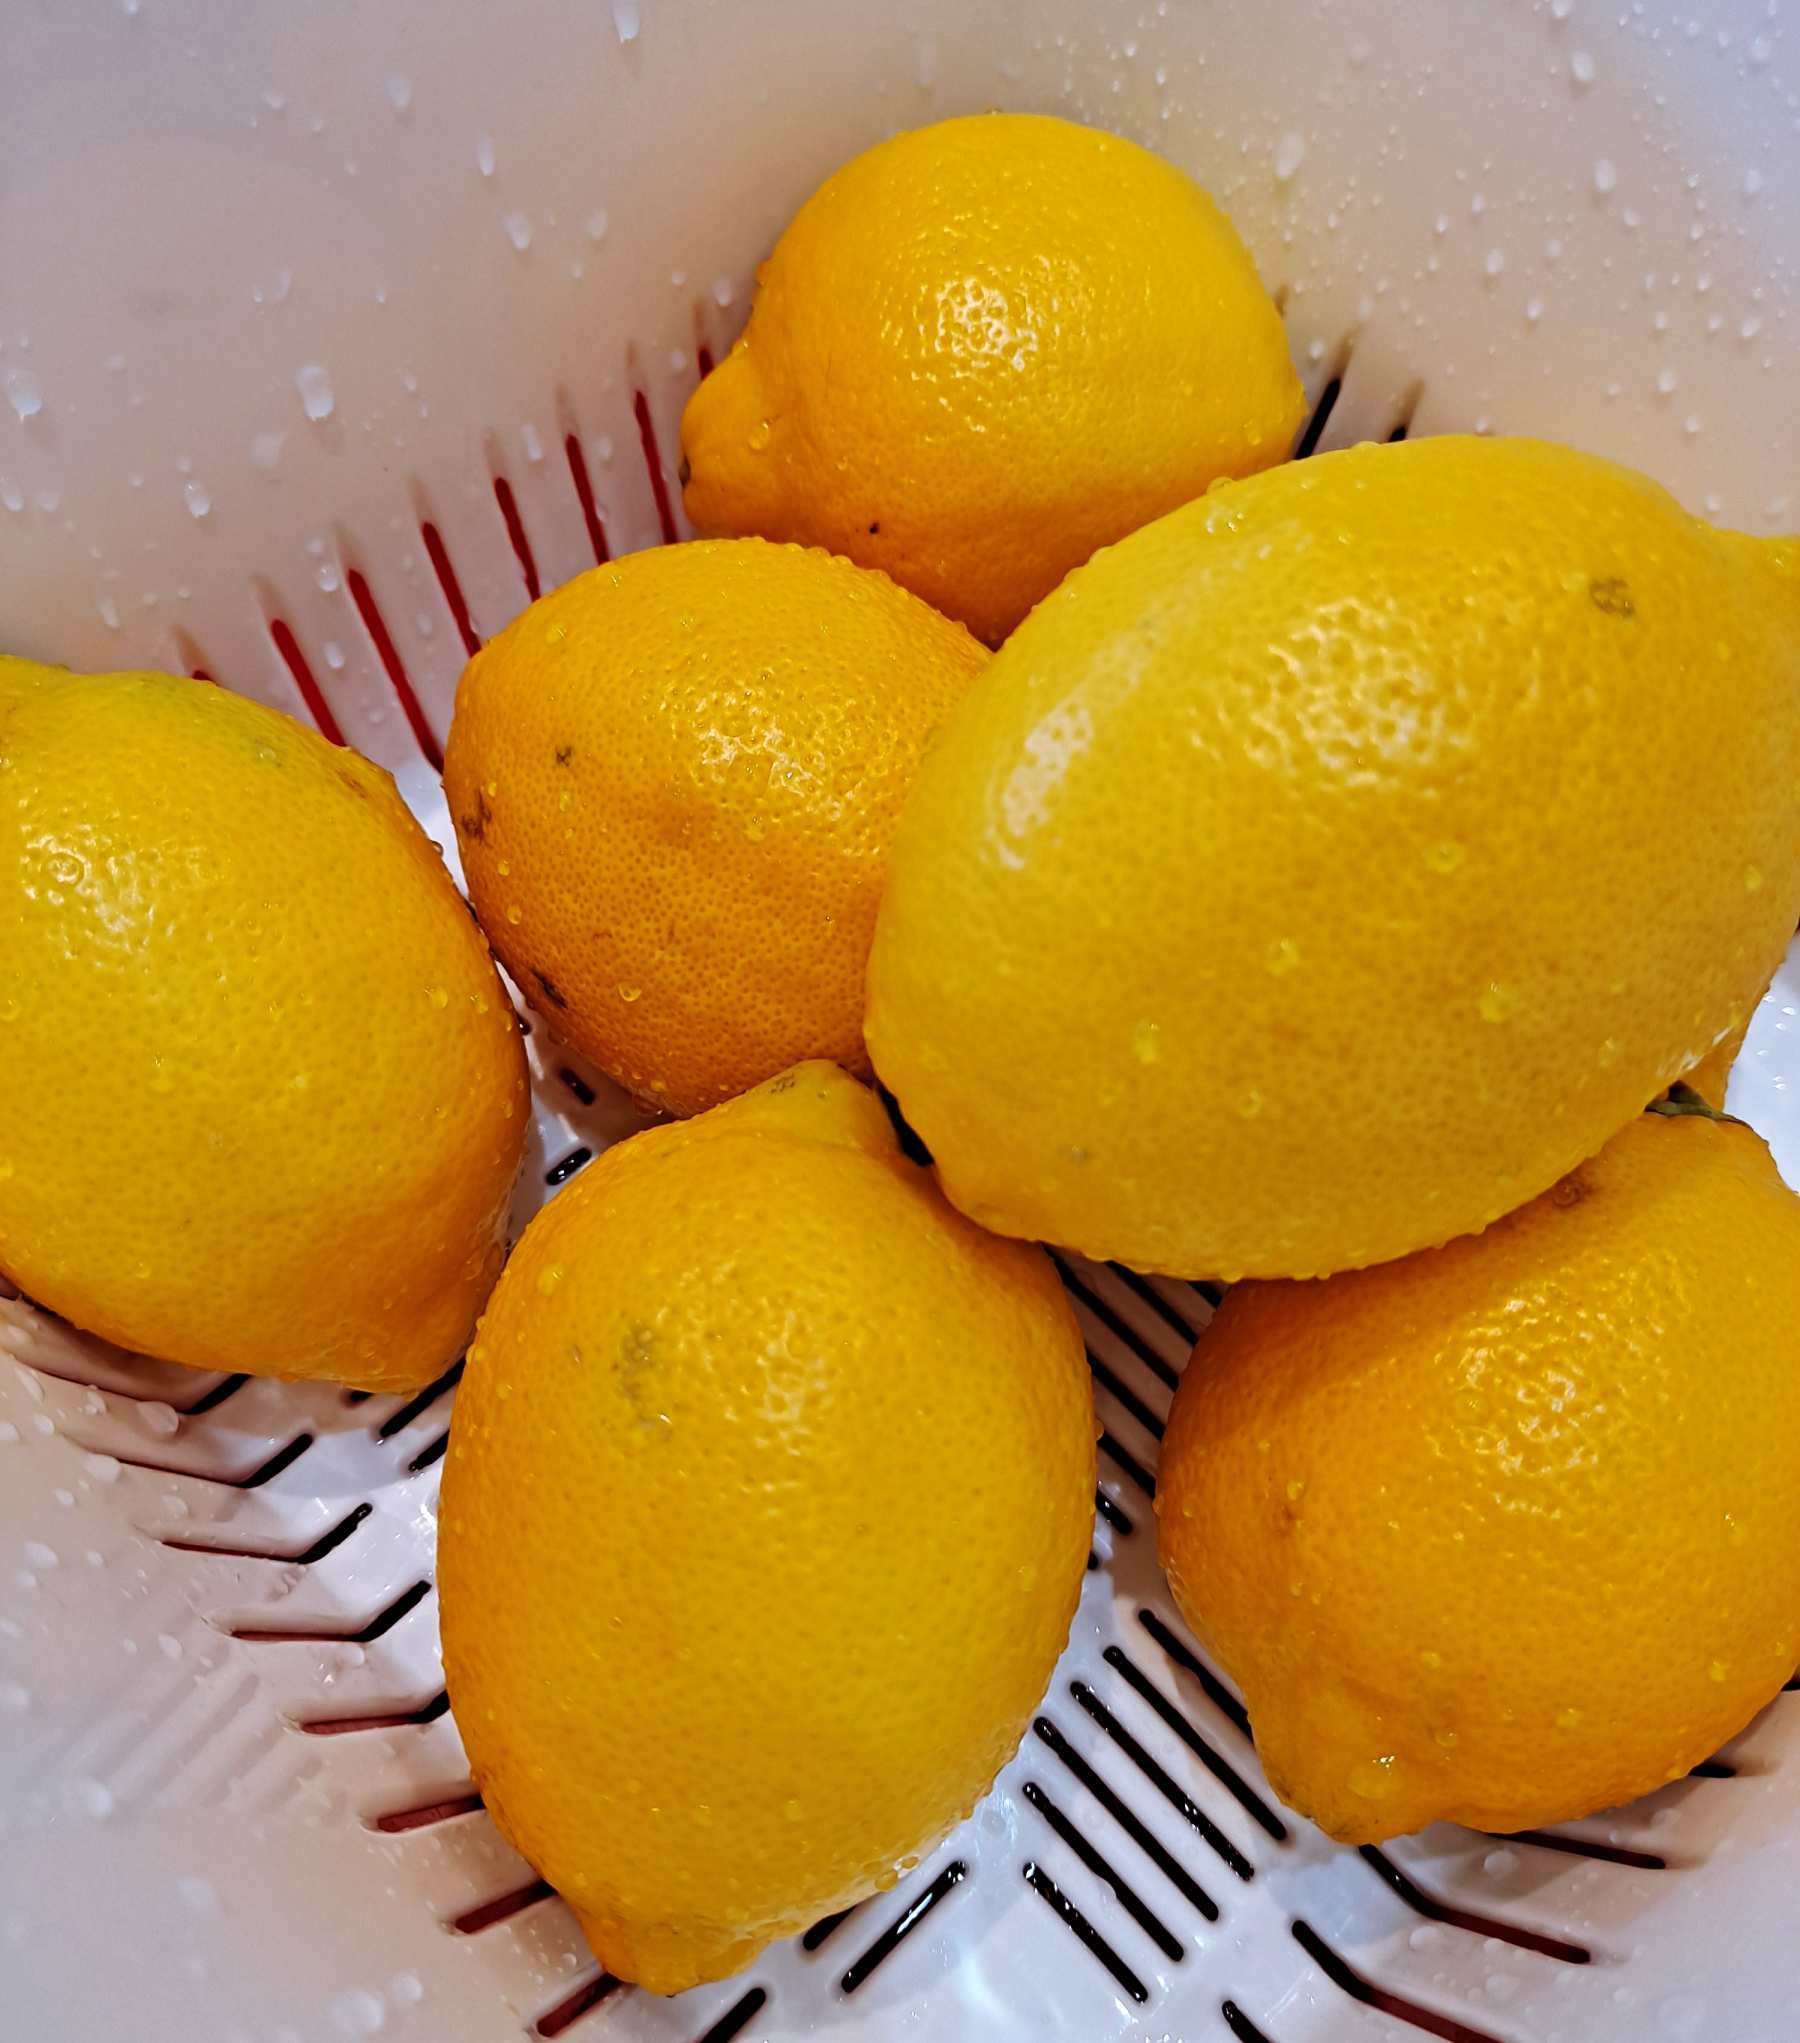 깨끗한 레몬을 담아주기